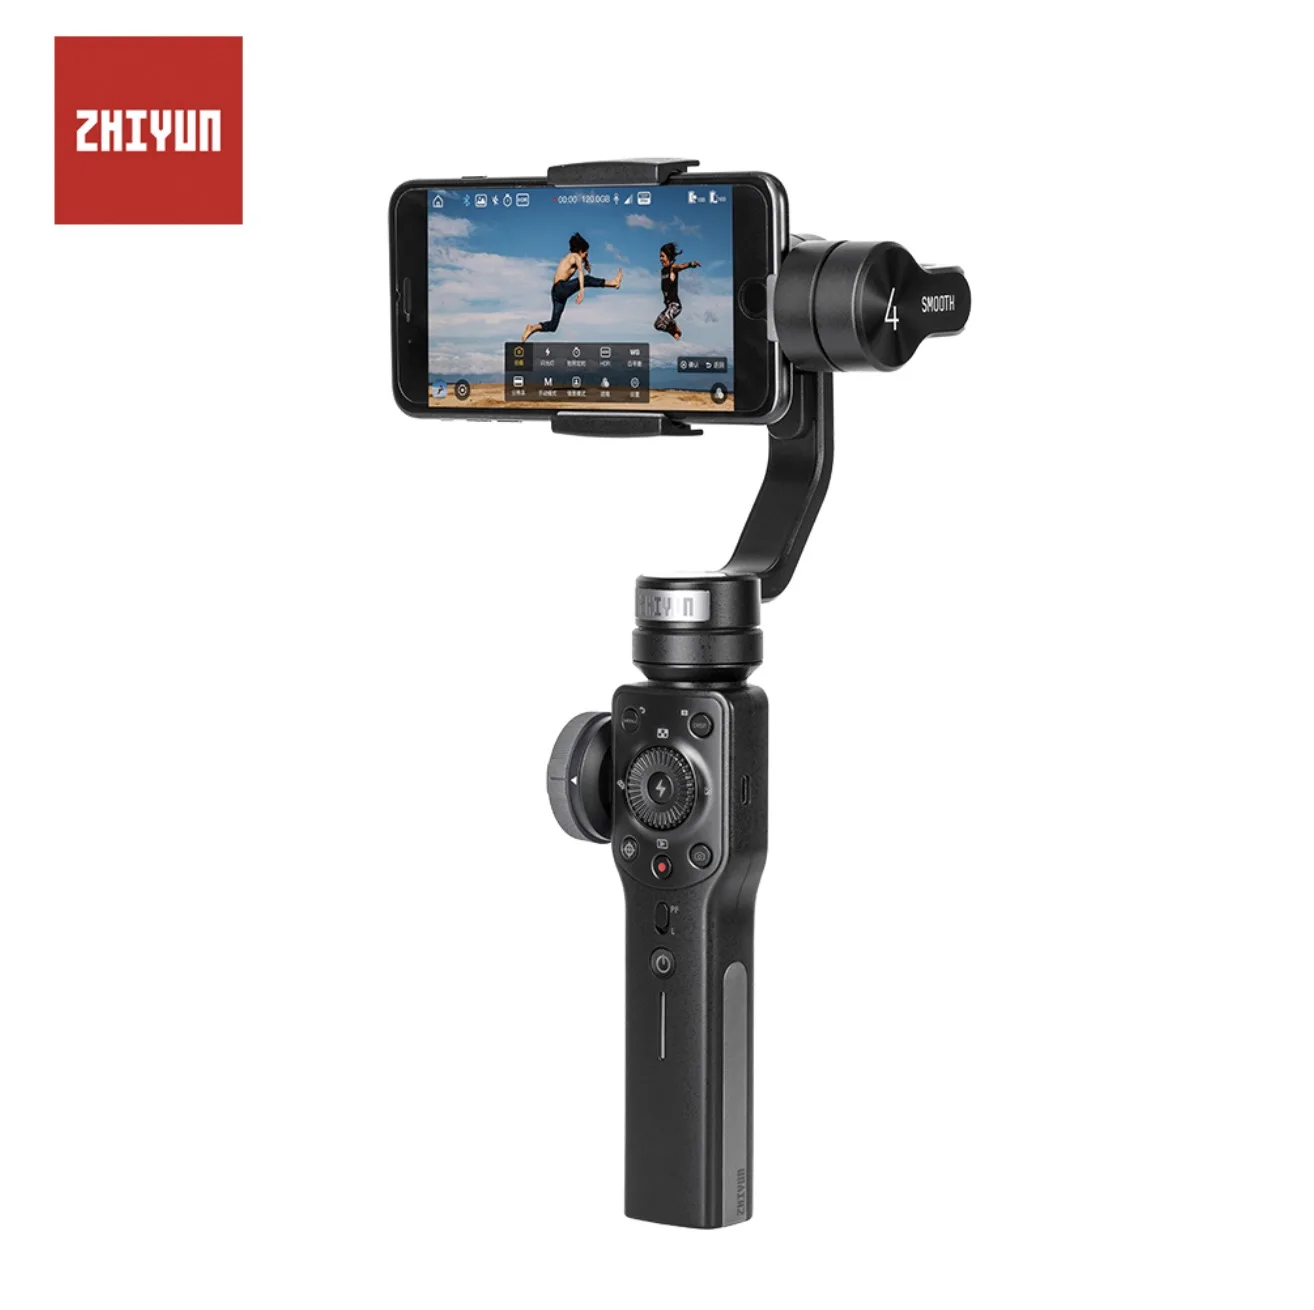 Zhiyun Чжи Юн гладкой 4 3-осевой шарнирный стабилизатор для камеры стабилизатор для iPhone X 8 Gopro Hero 5 SJCAM SJ7 спортивной экшн-камеры Xiaomi Yi 4 k Экшн-камера - Цвет: Красный